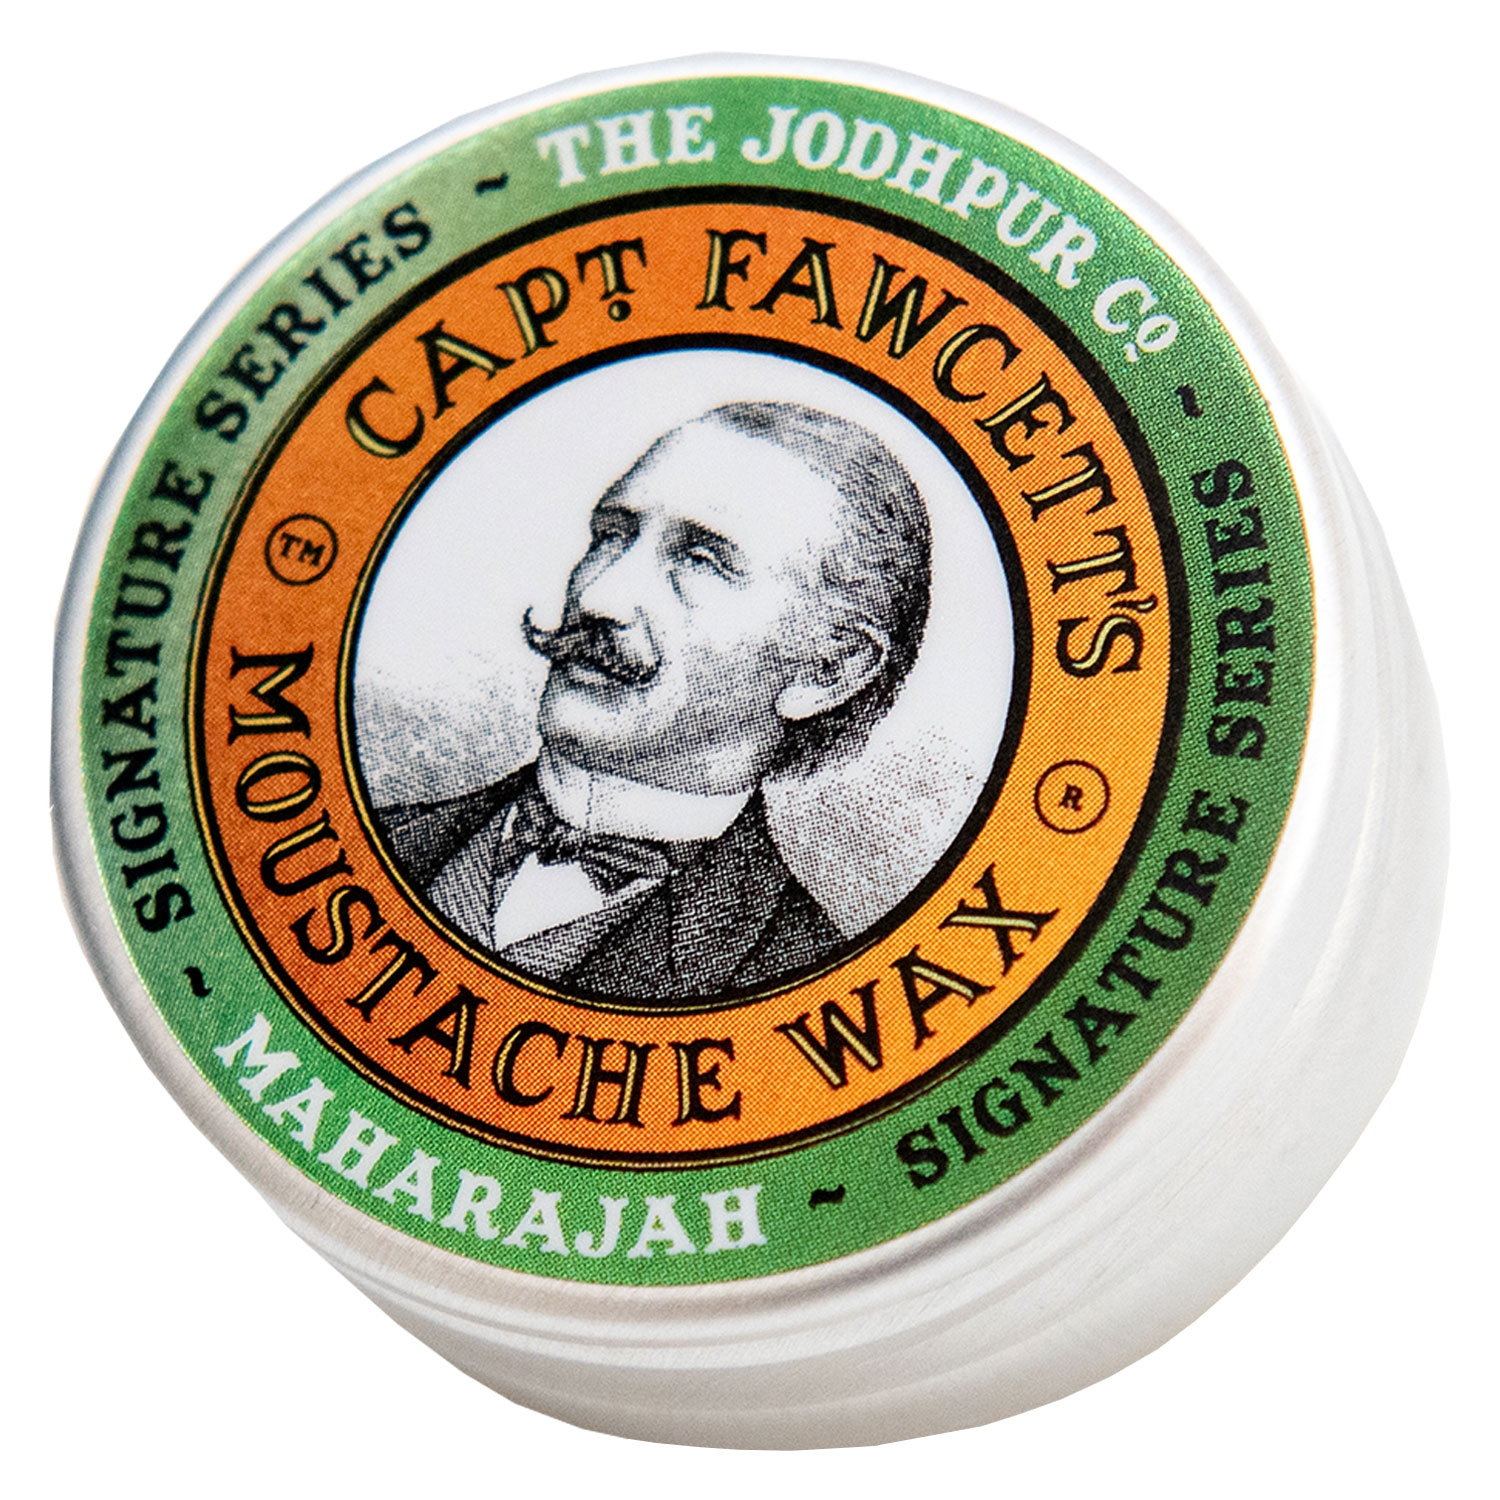 Produktbild von Capt. Fawcett Care - Maharajah Moustache Wax